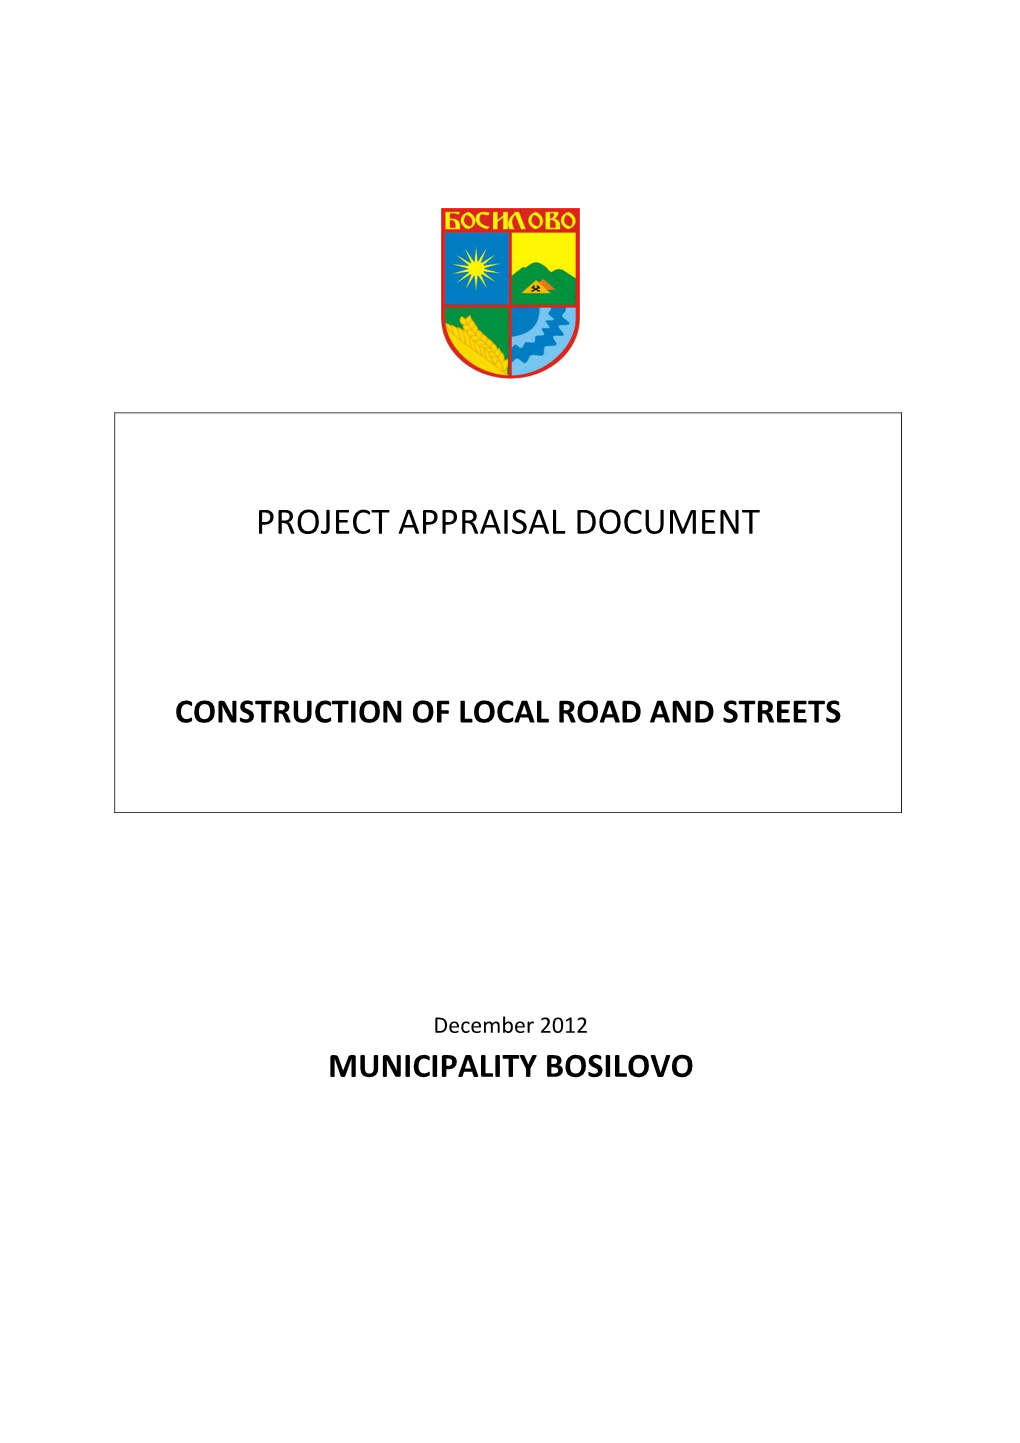 Bosilovo Project Paper On